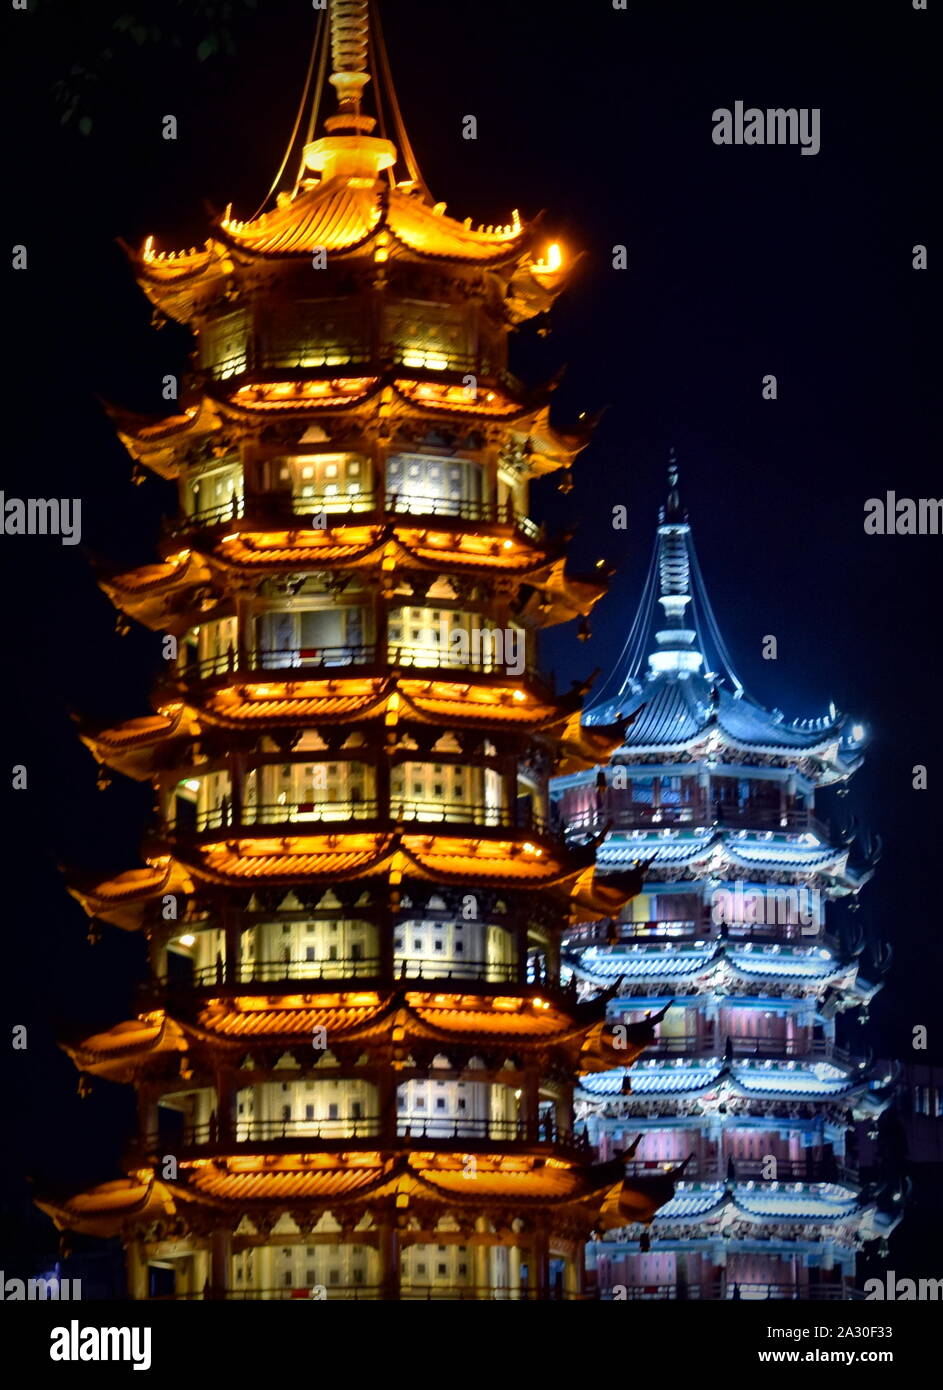 Beautiful Sun and Moon pagodas of Guilin at night, China Stock Photo